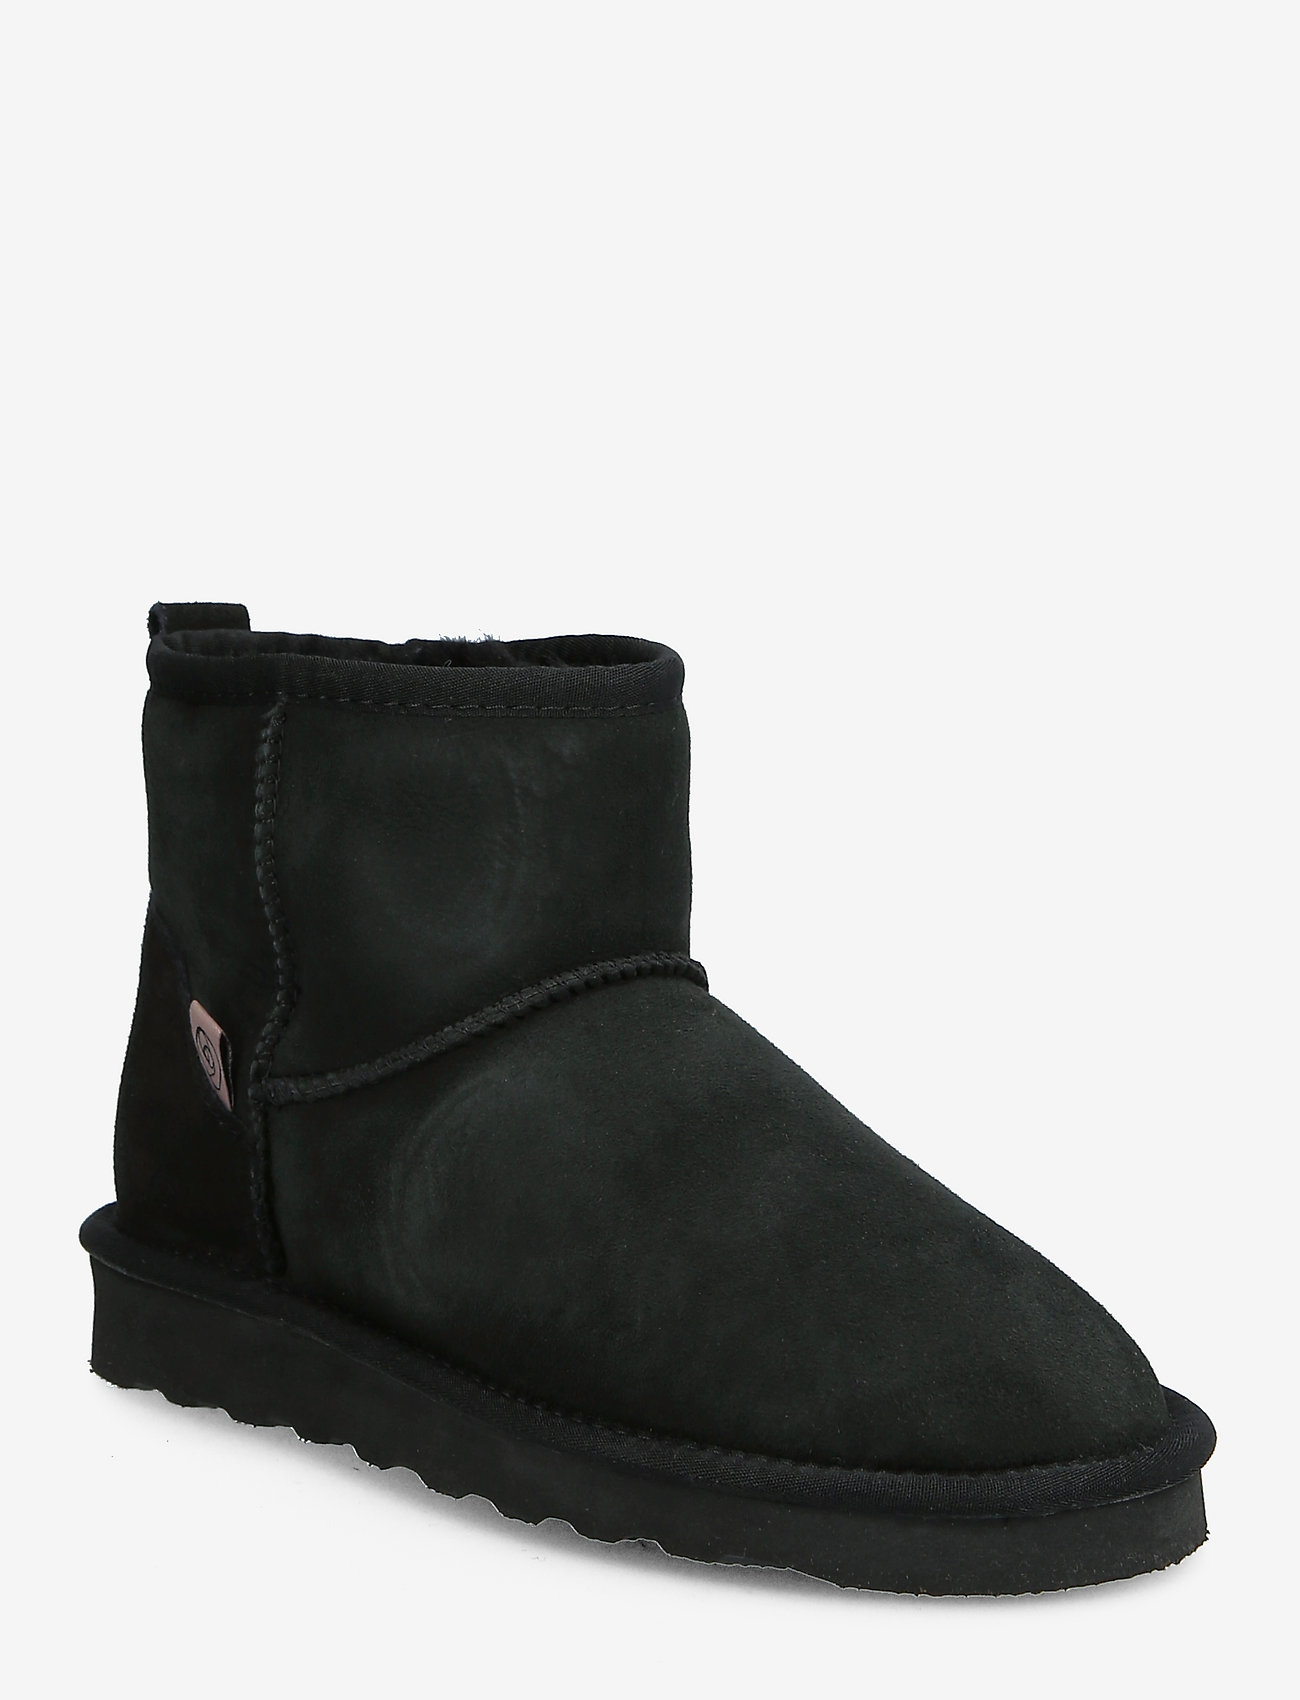 Rosemunde - Shearling boots - naised - black - 0